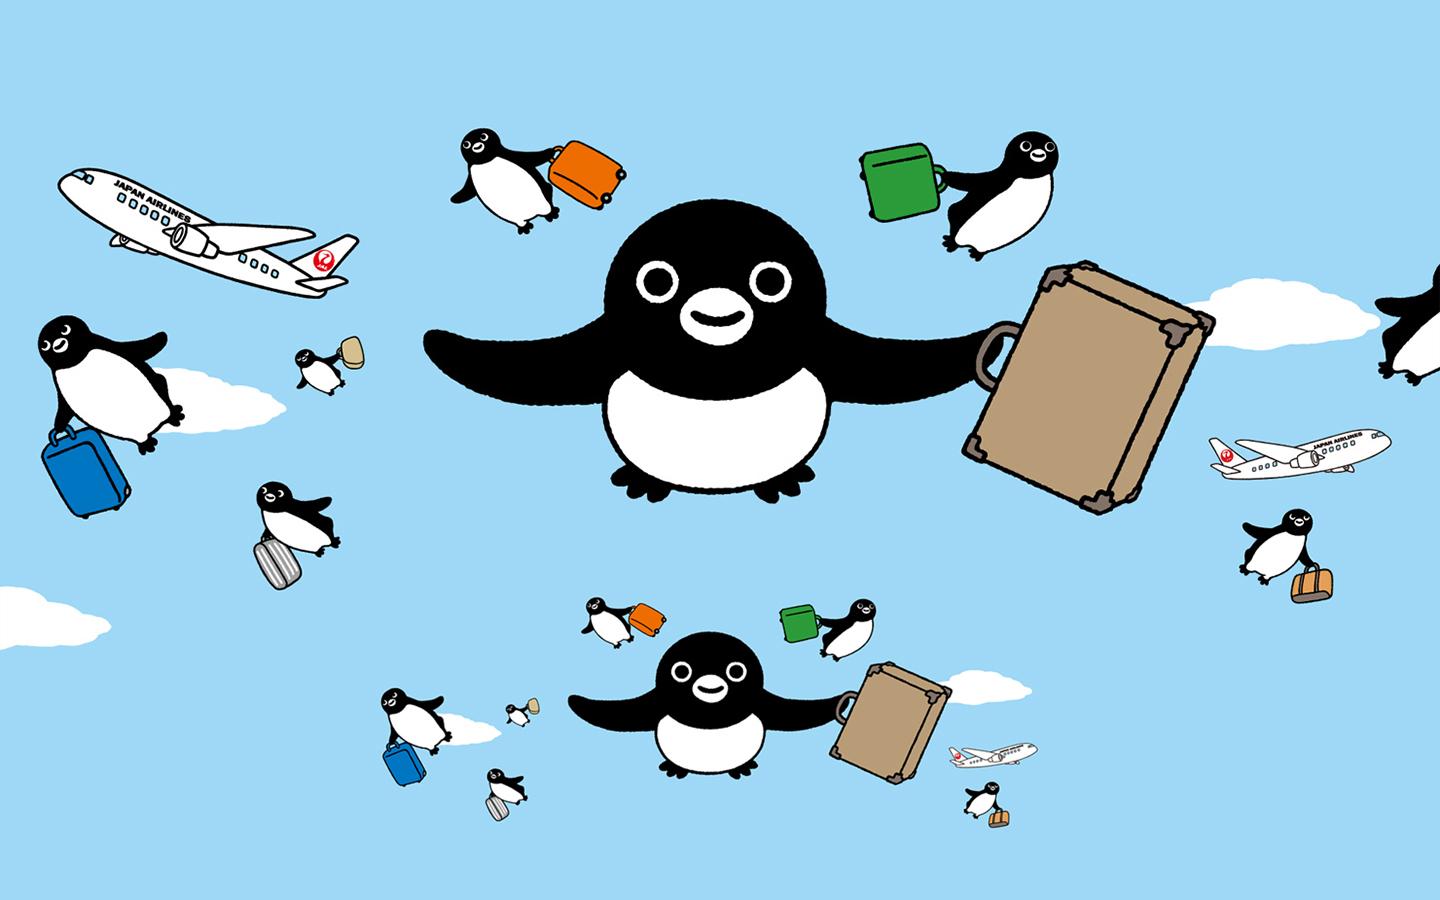 スペースパンダ虫 Pa Twitter 何年かぶりにデスクトップの壁紙変えた ペンギンの数はオリジナルよりもちょっと増やしてみたよ ペンギン かわいいよペンギン Suicaのペンギン Http T Co Qc4ajjpult